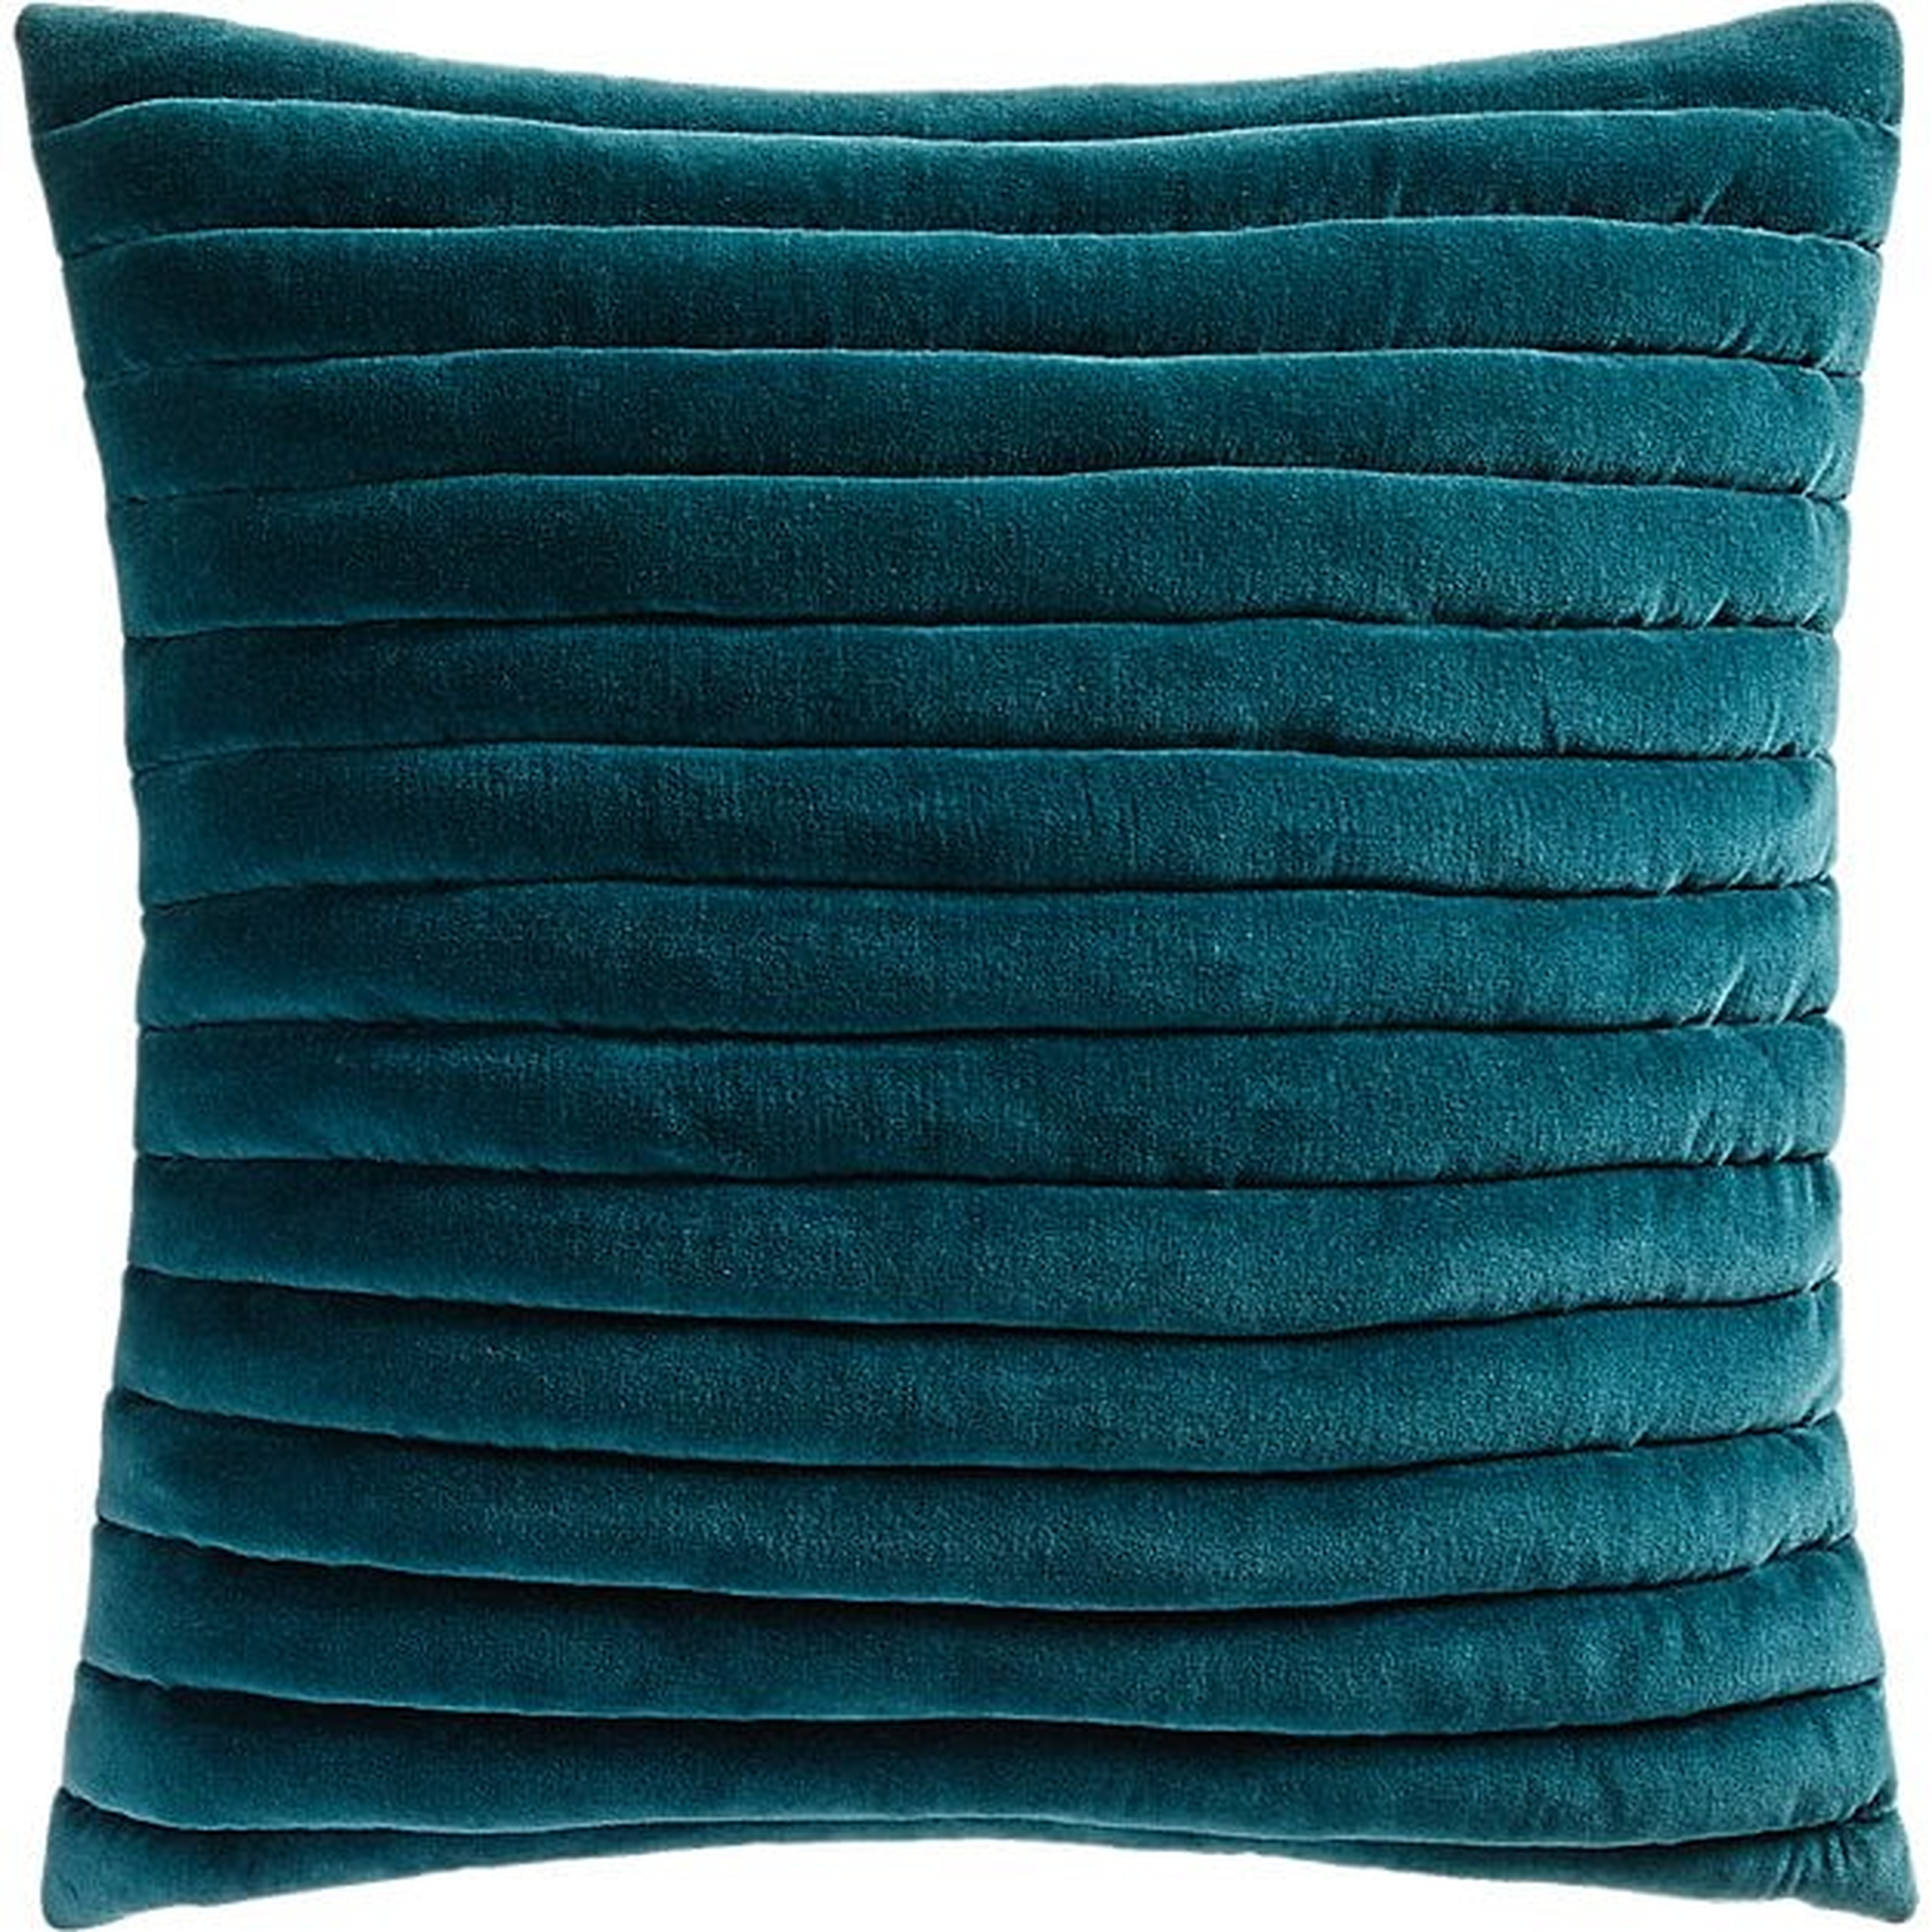 Channeled Teal Velvet Pillow, 18" x 18" - CB2